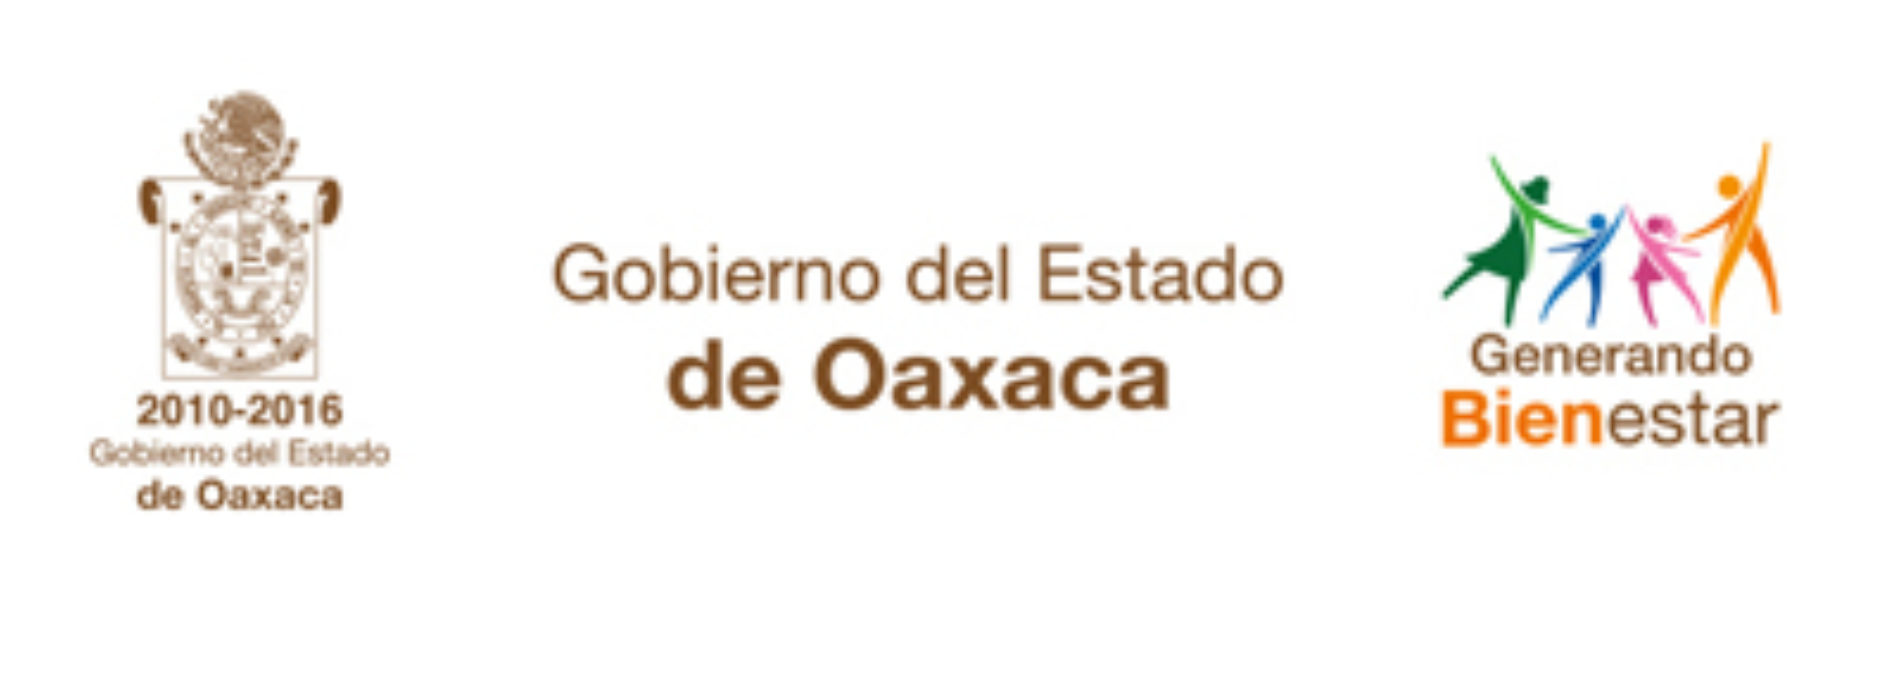 Desacredita Gobierno de Oaxaca nueva versión de propaganda negra en redes sociales